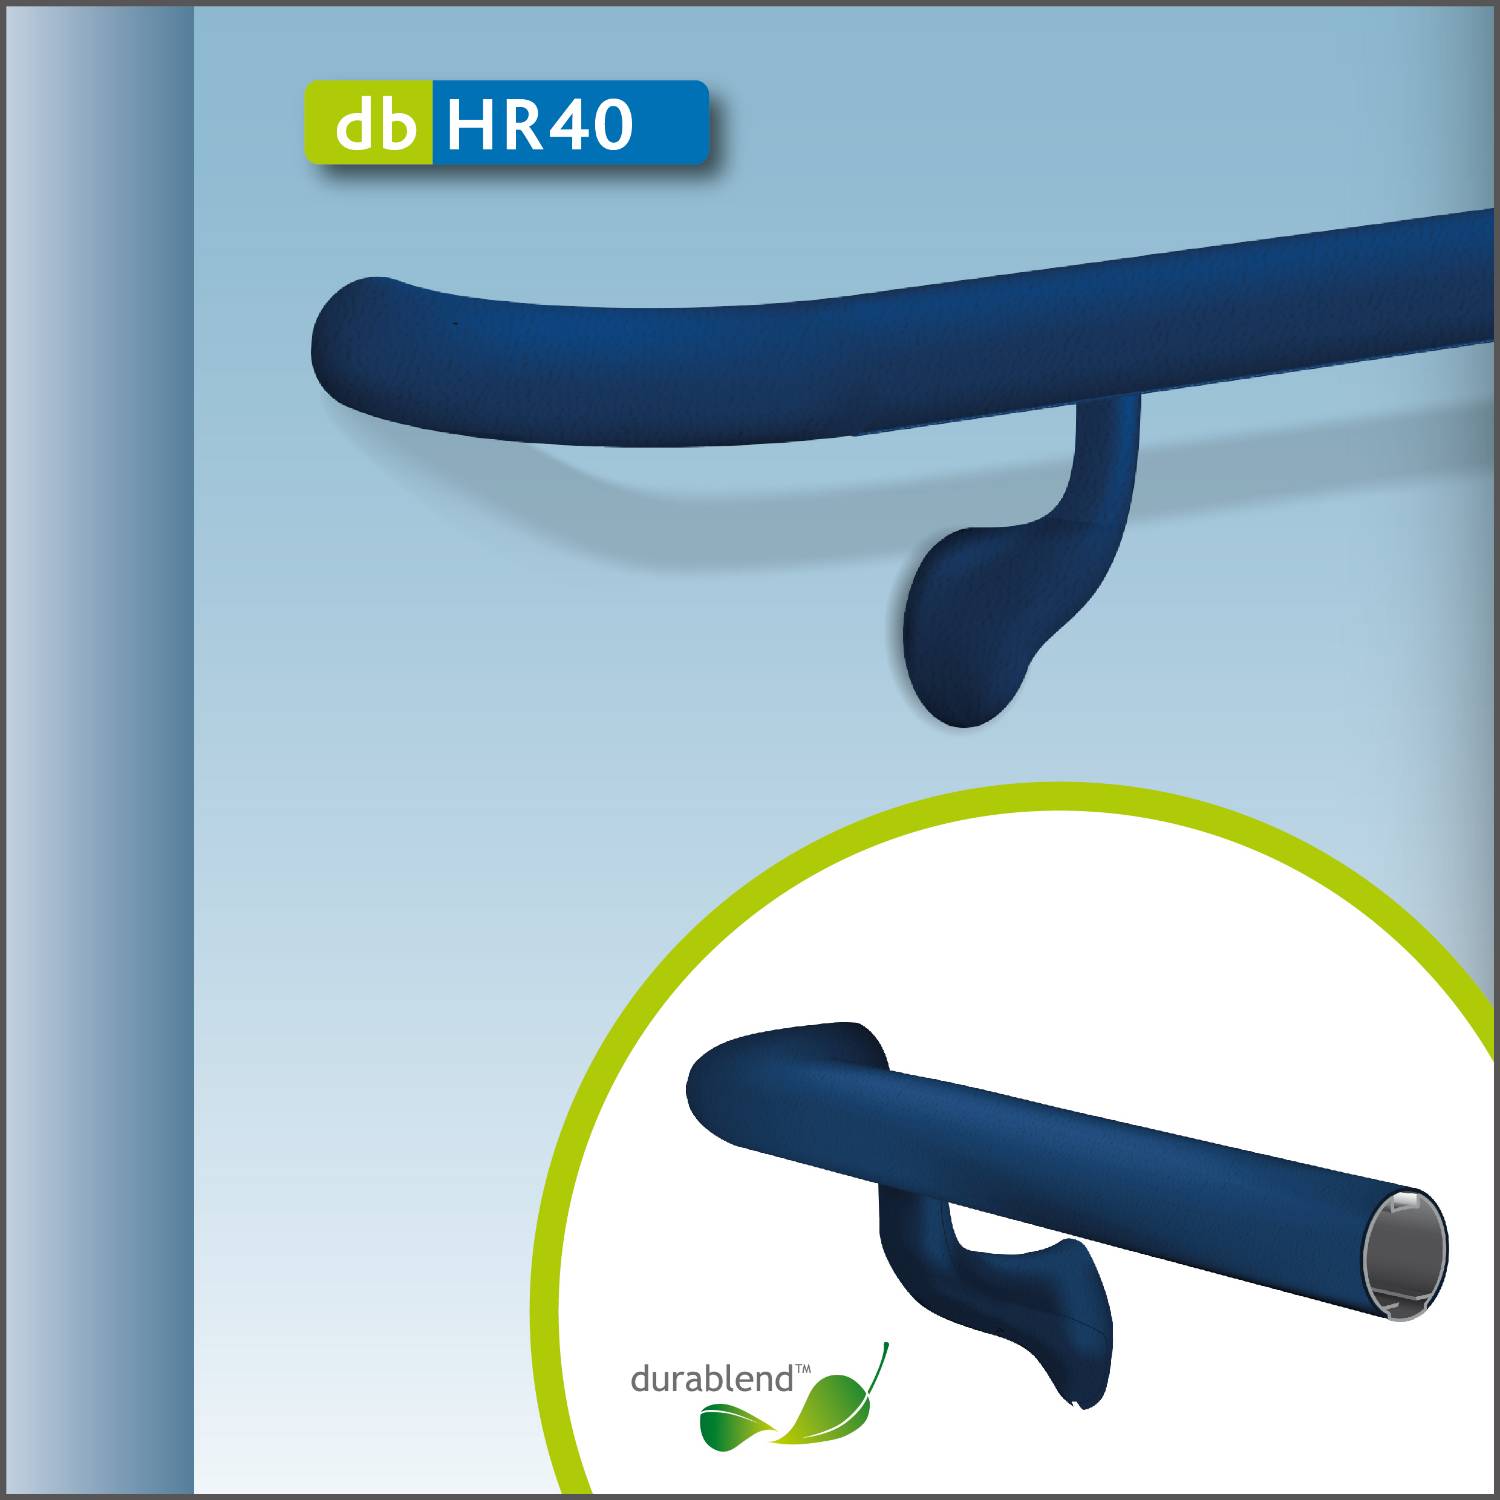 Handrail db HR40